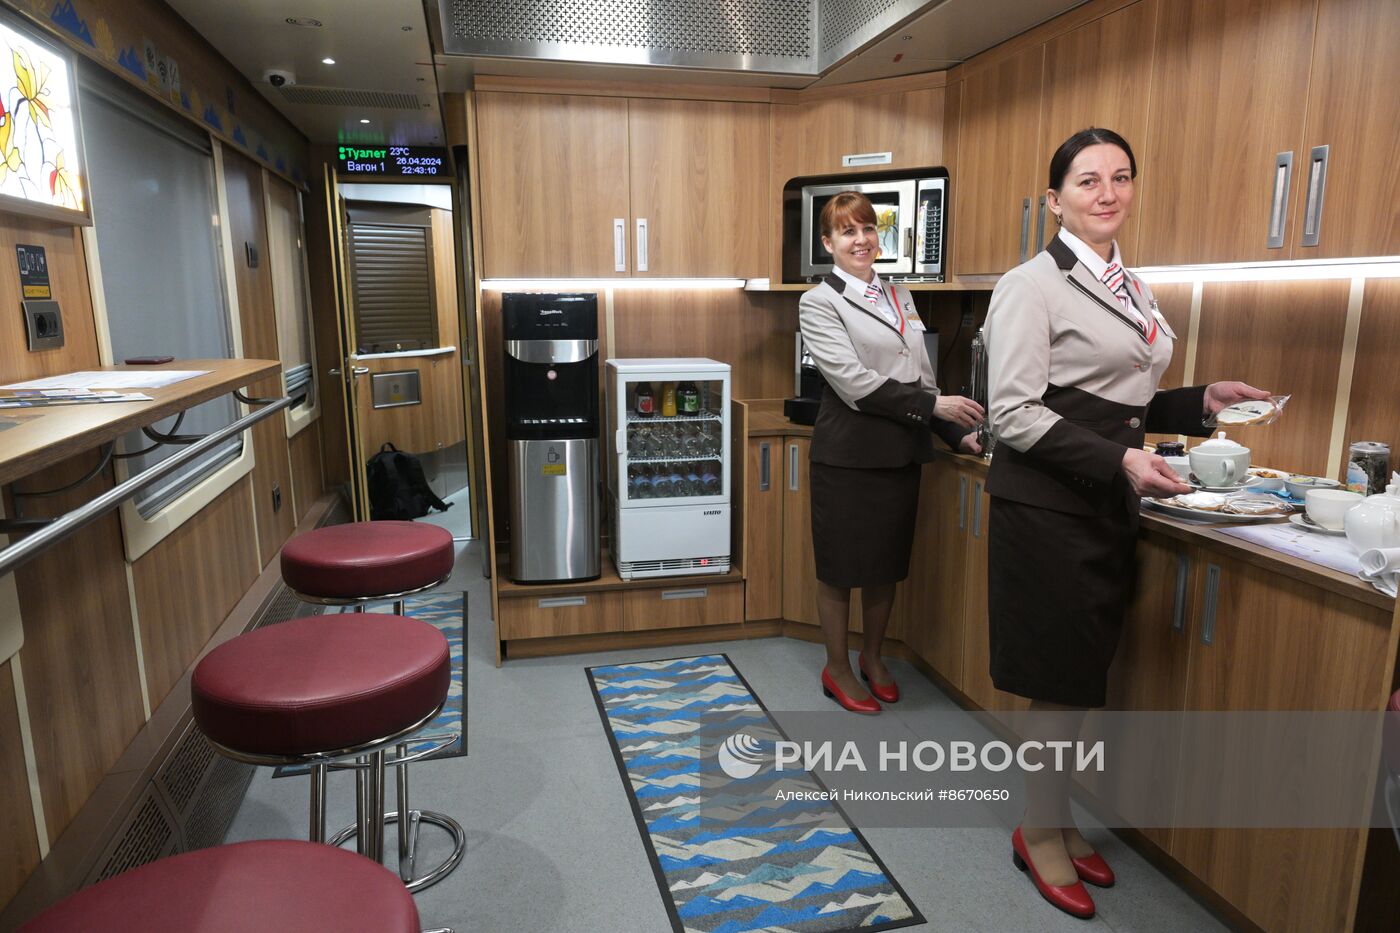 Первый рейс туристического поезда "Жемчужина Кавказа" в обновленном составе